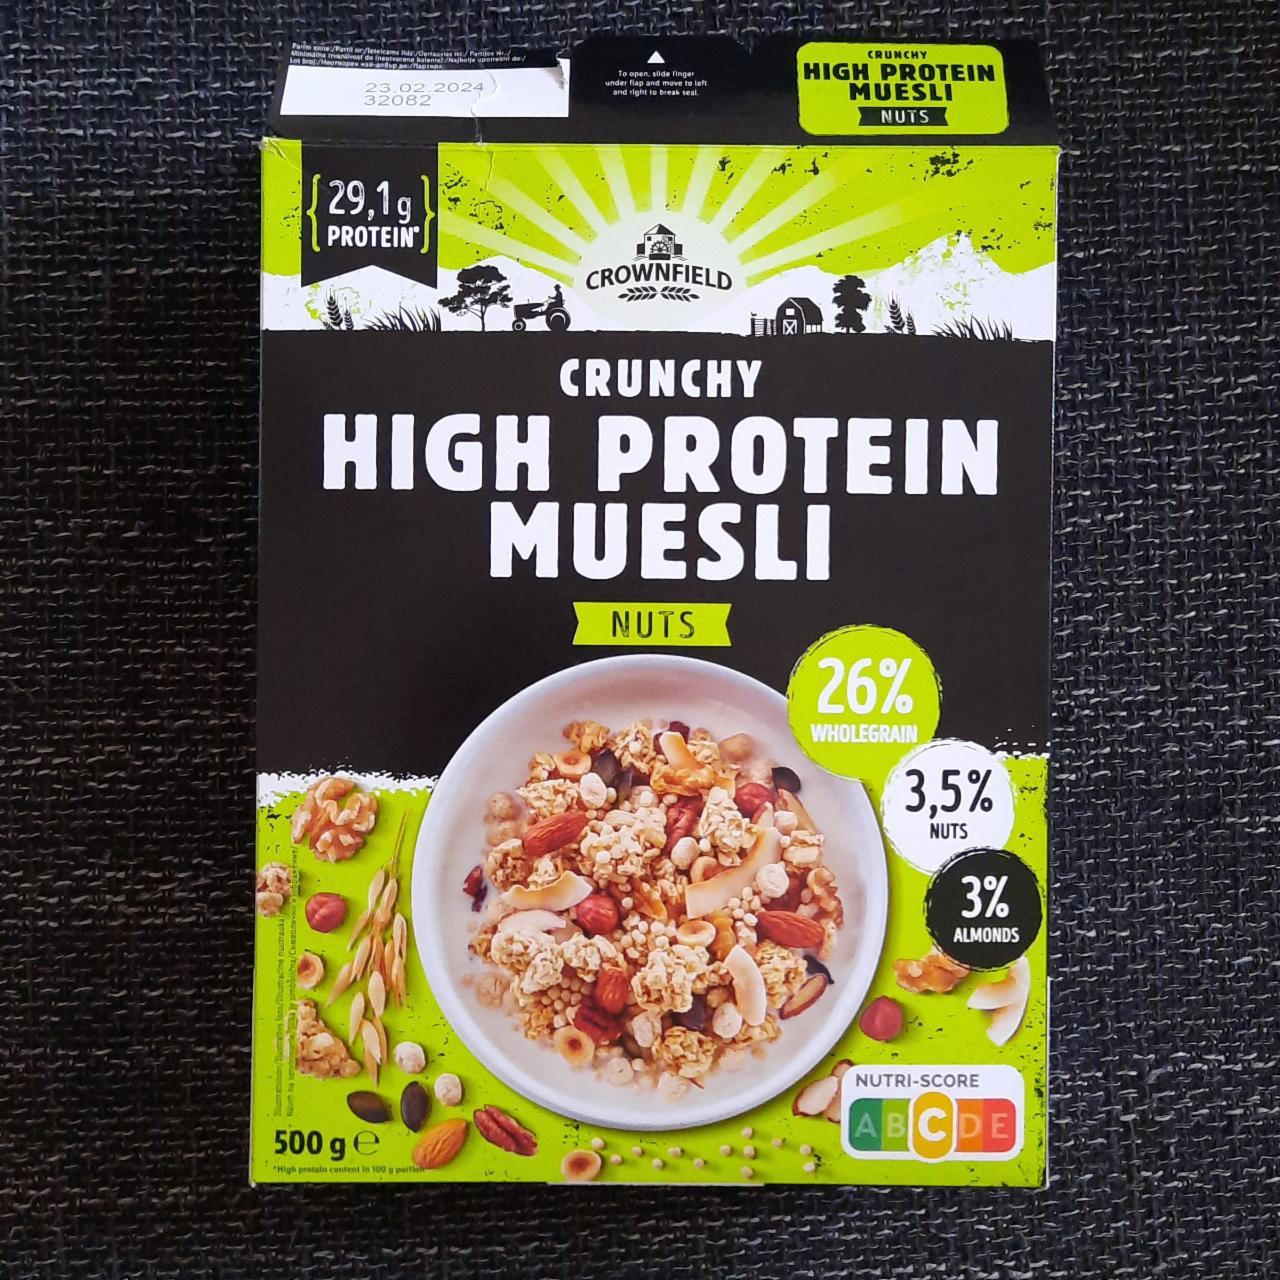 Fotografie - Crunchy High Protein Muesli Nuts Crownfield